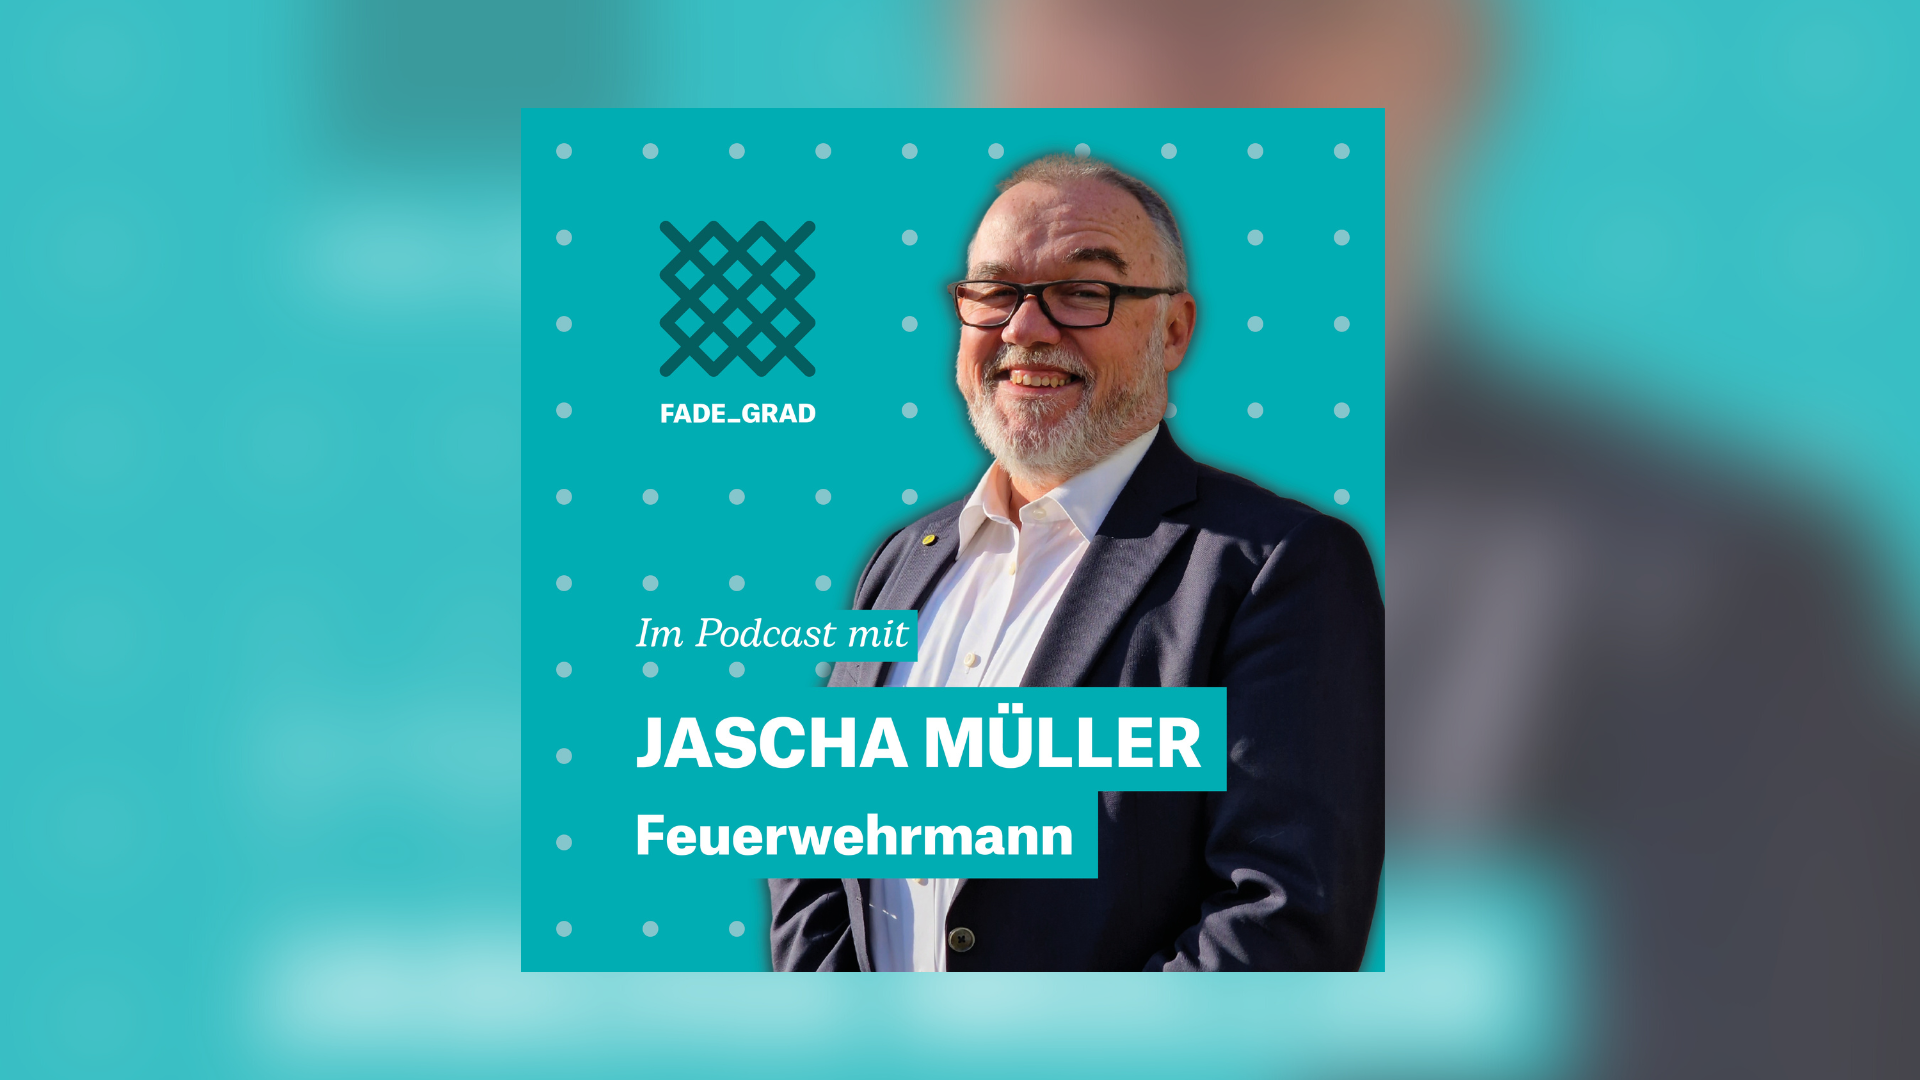 Jascha Müller ist Feuerwehrmann in St.Gallen und zu Gast im Fadegrad-Podcast.